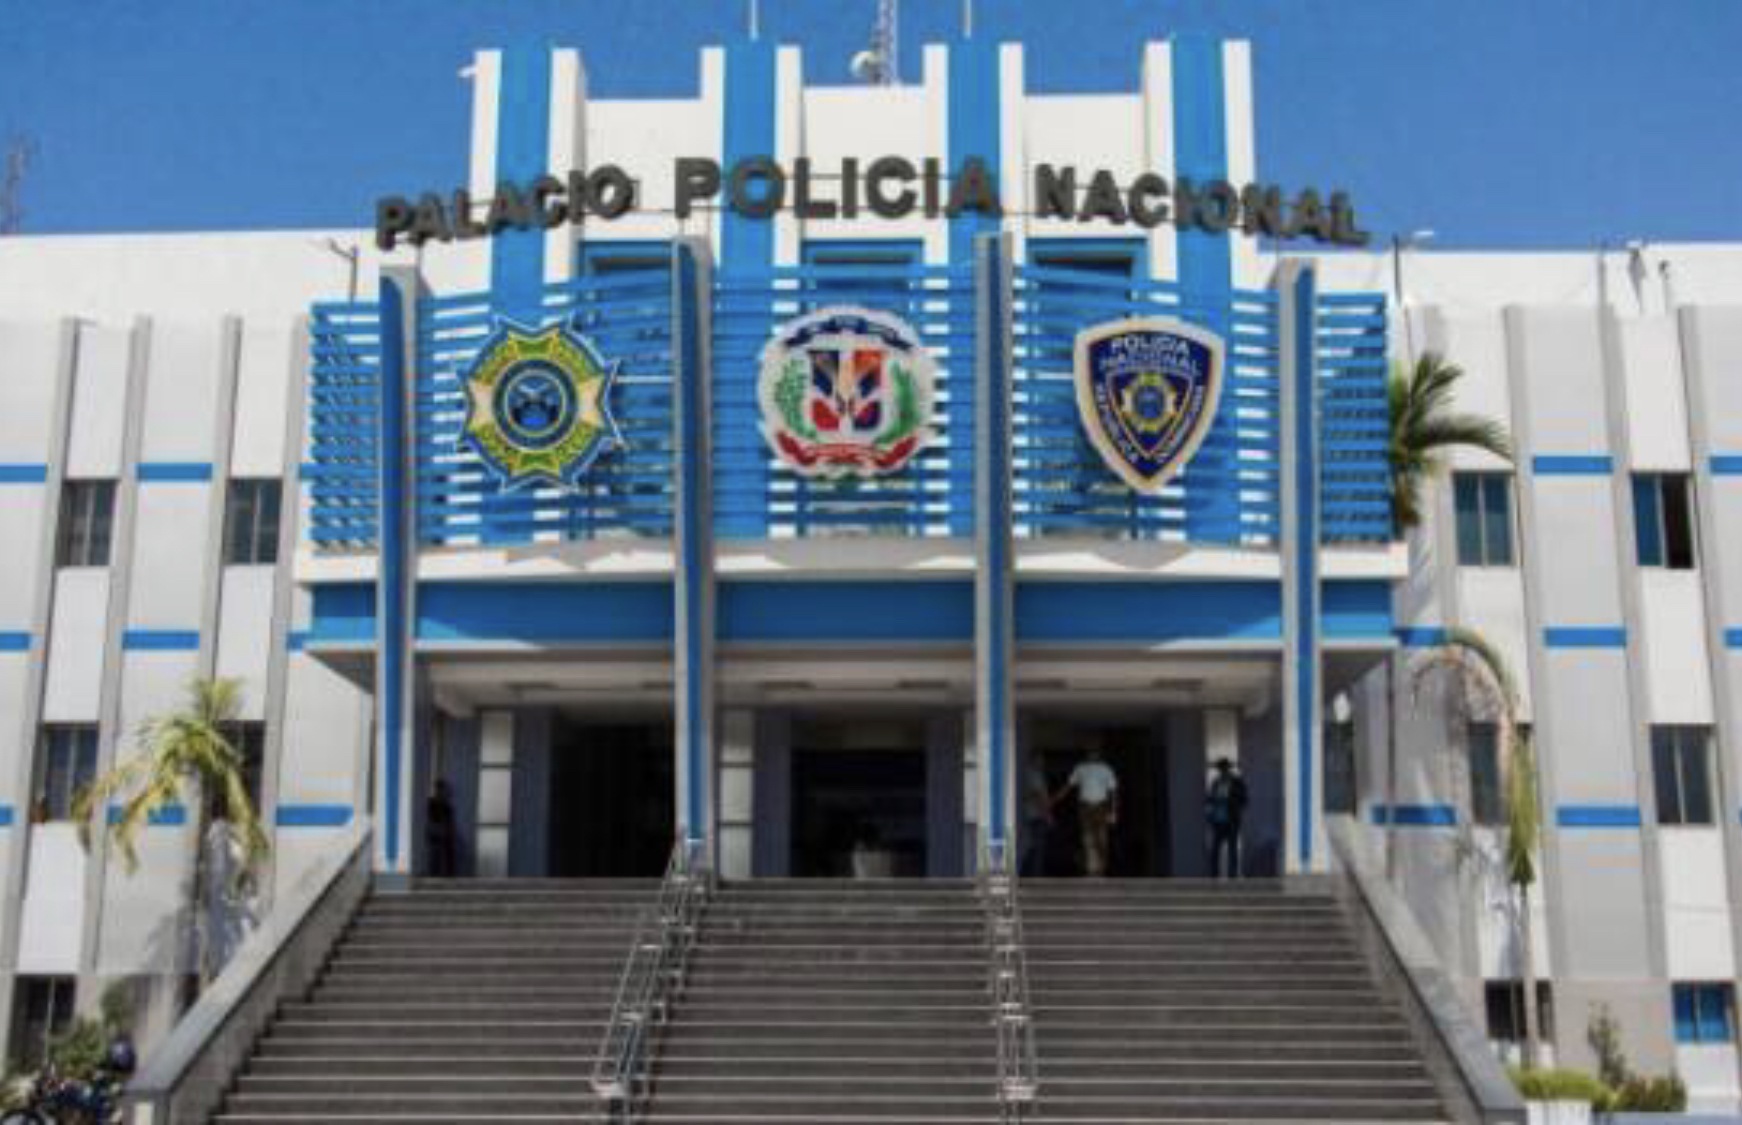 Palacio Policia Nacional